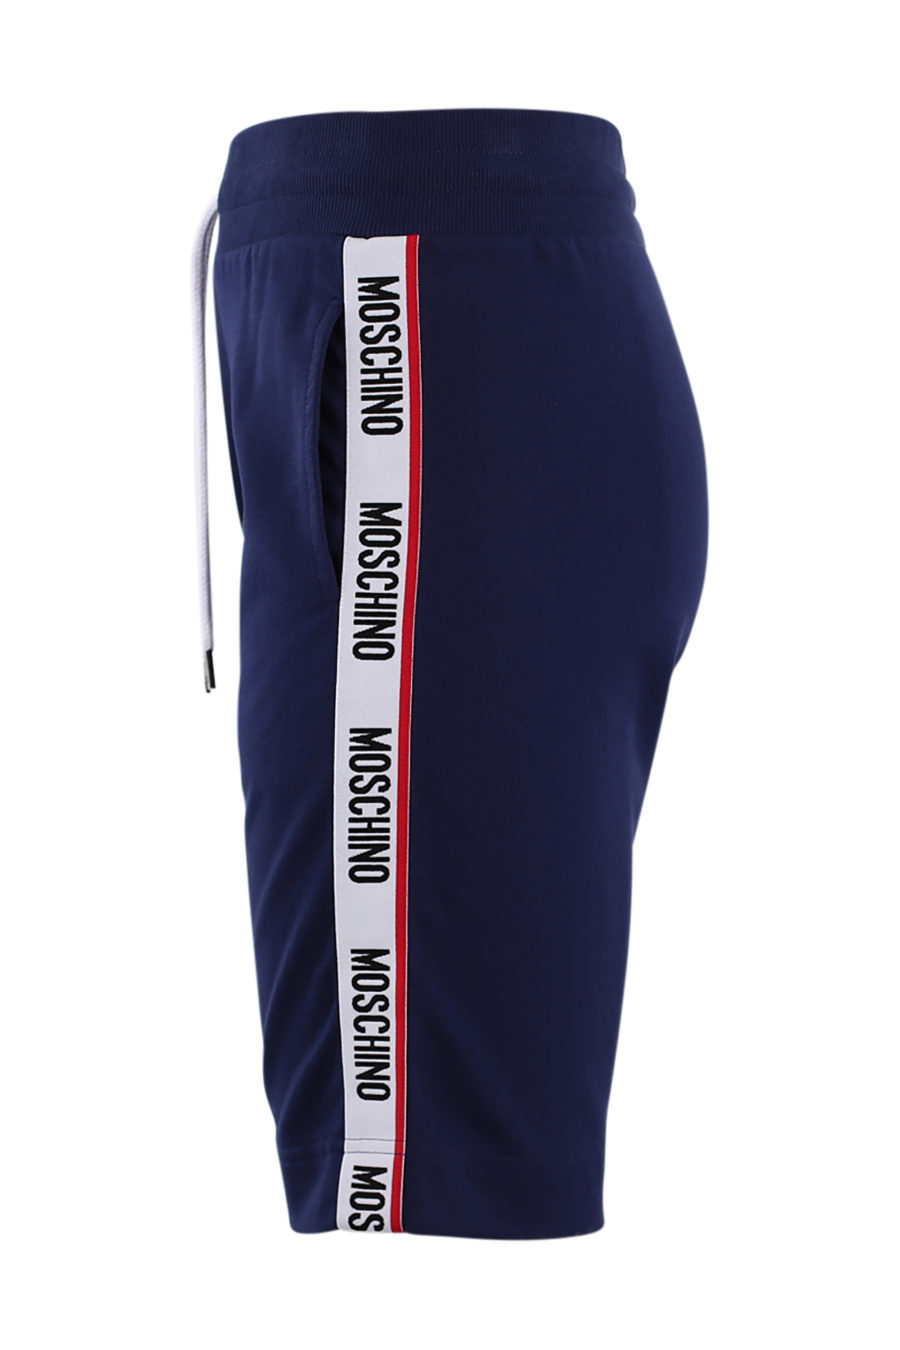 Pantalón azul corto con logo en cinta laterales - IMG 8838